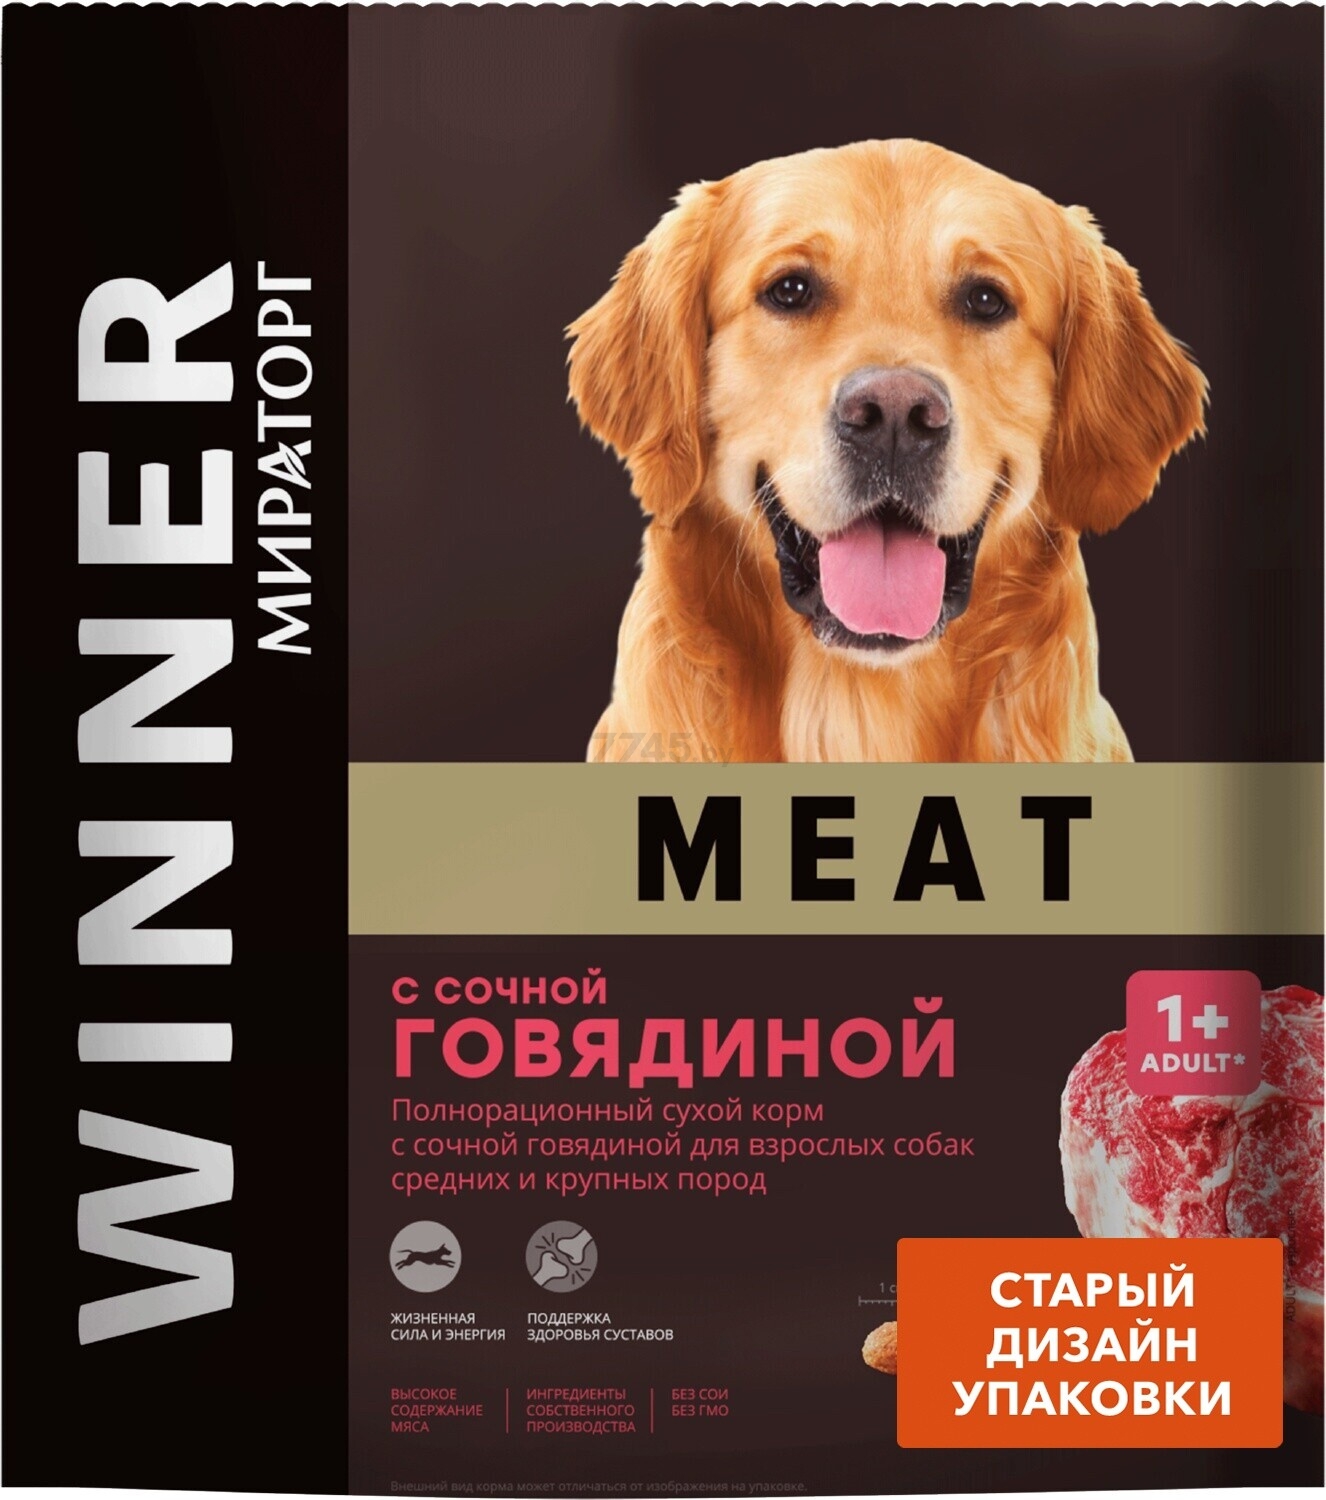 Сухой корм для средних и крупных собак МИРАТОРГ Winner Meat с сочной говядиной 1,1 кг (1010017166) - Фото 3